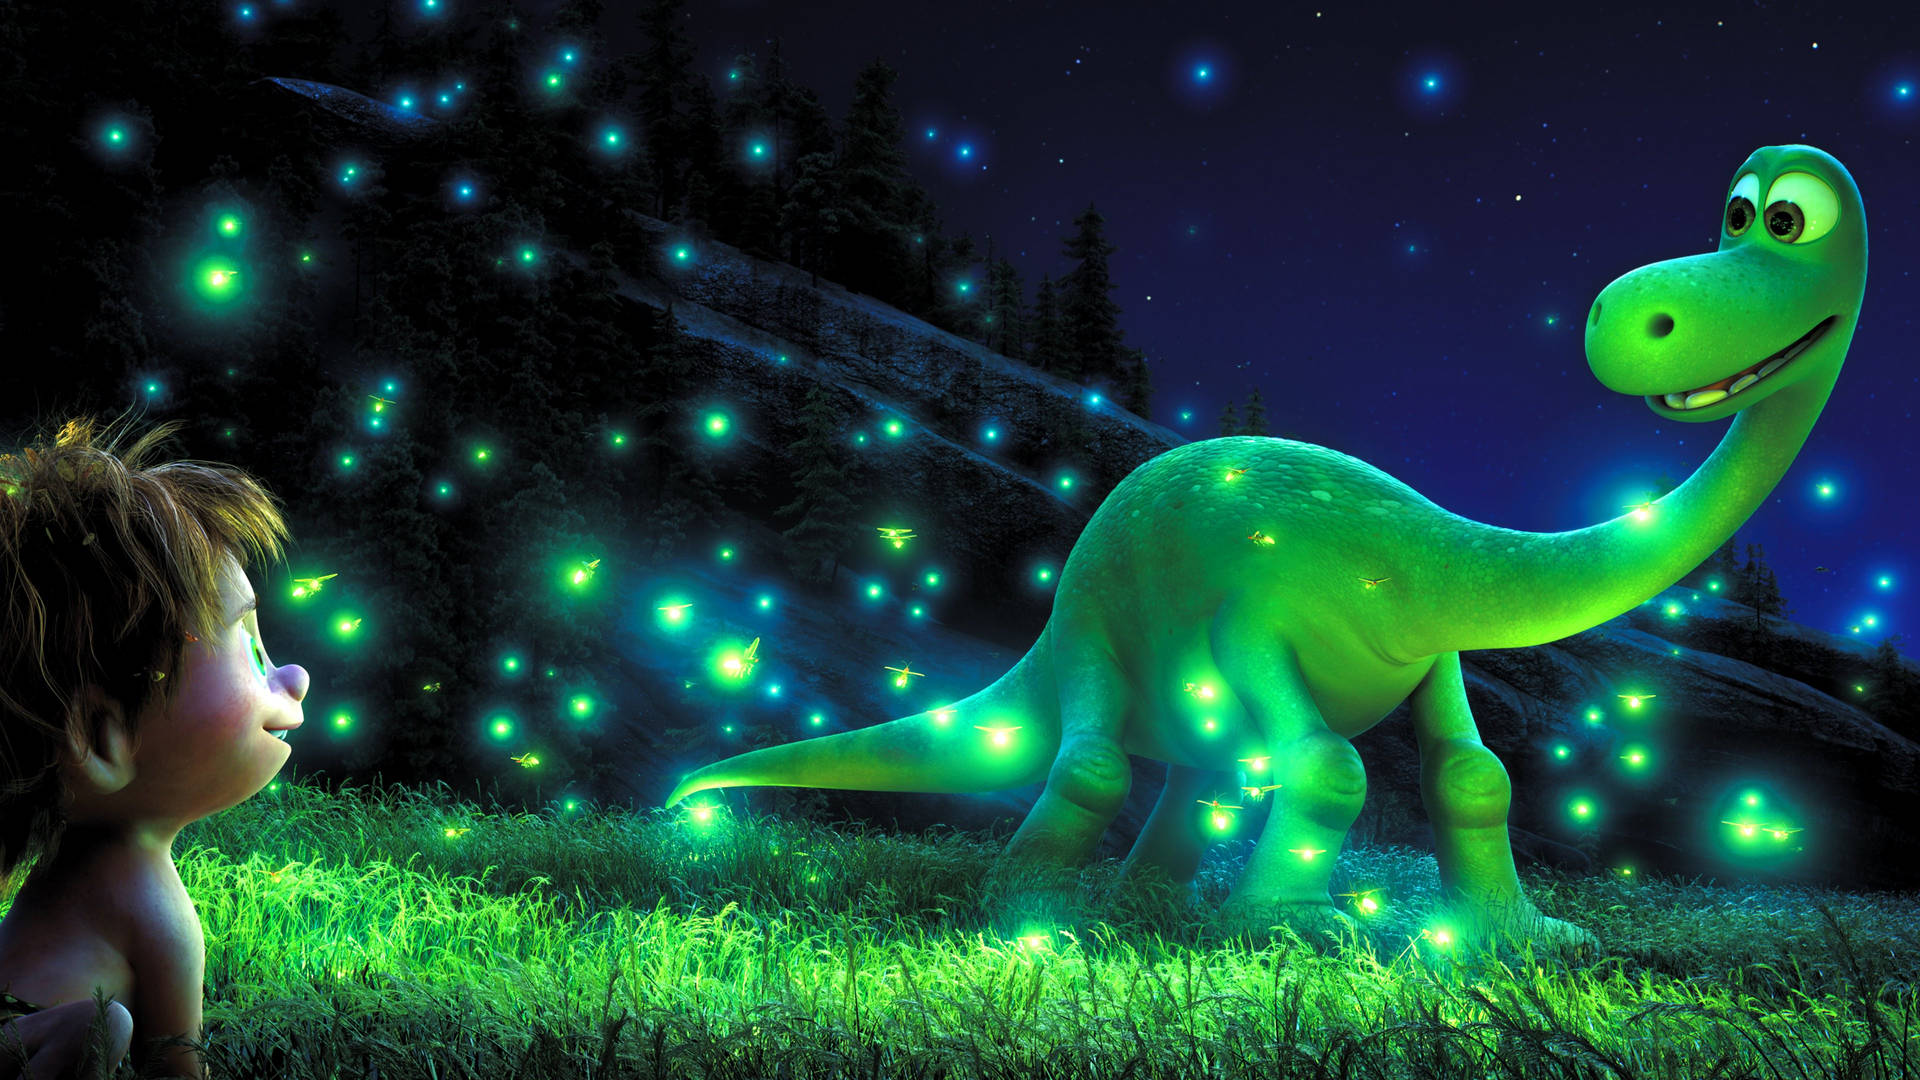 The Good Dinosaur Firefly Scene Wallpaper